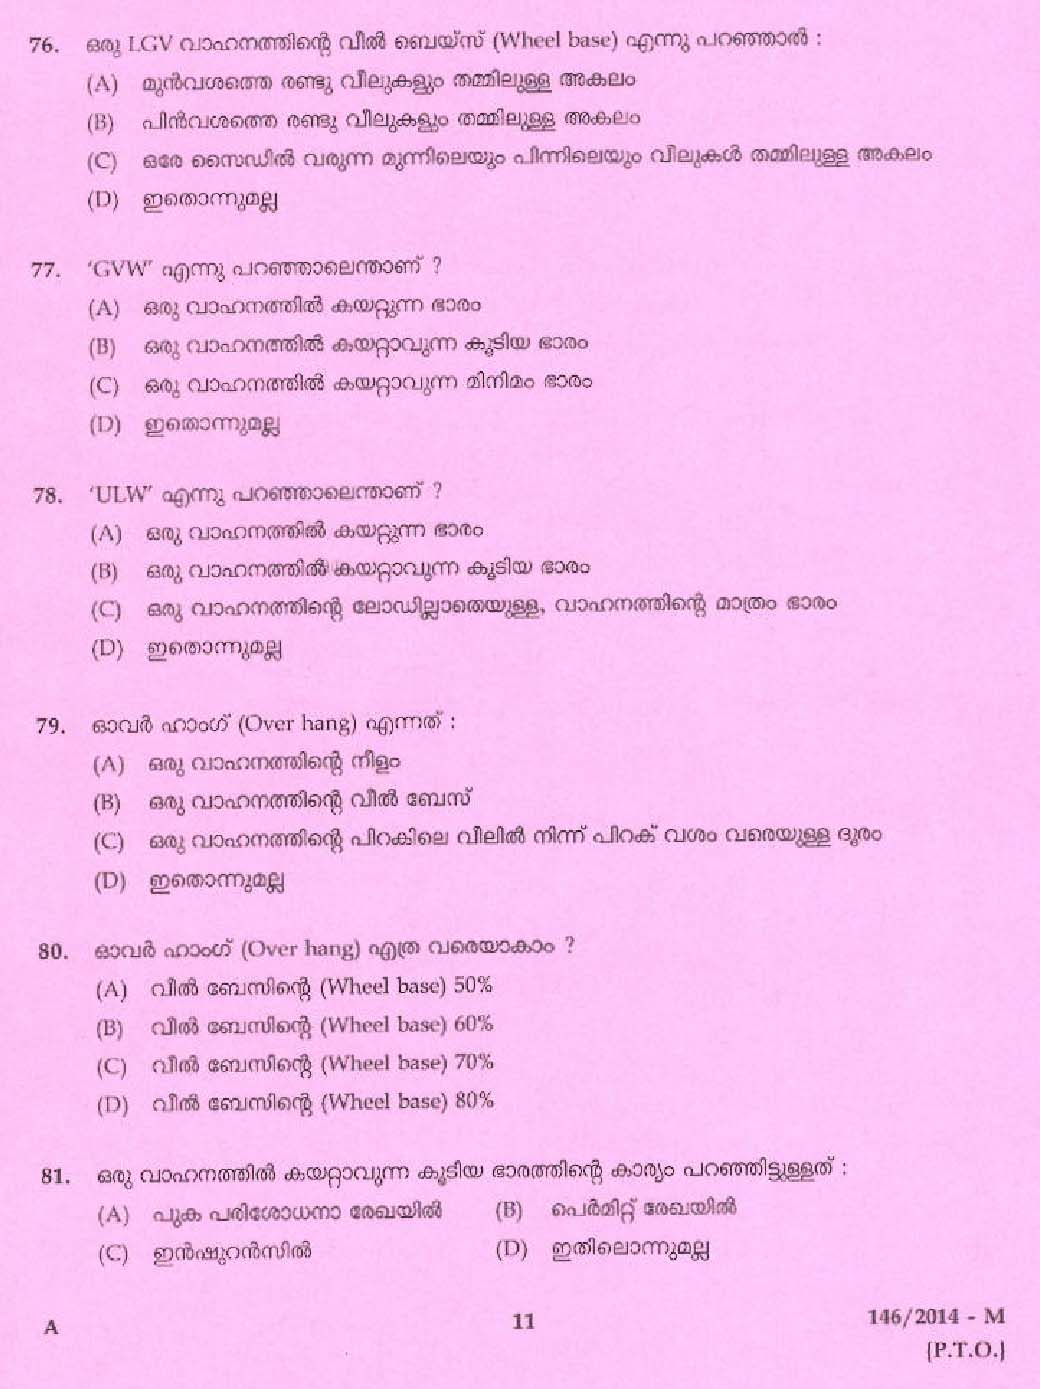 Kerala PSC Driver Grade II Exam 2014 Question Paper Code 1462014 M 9